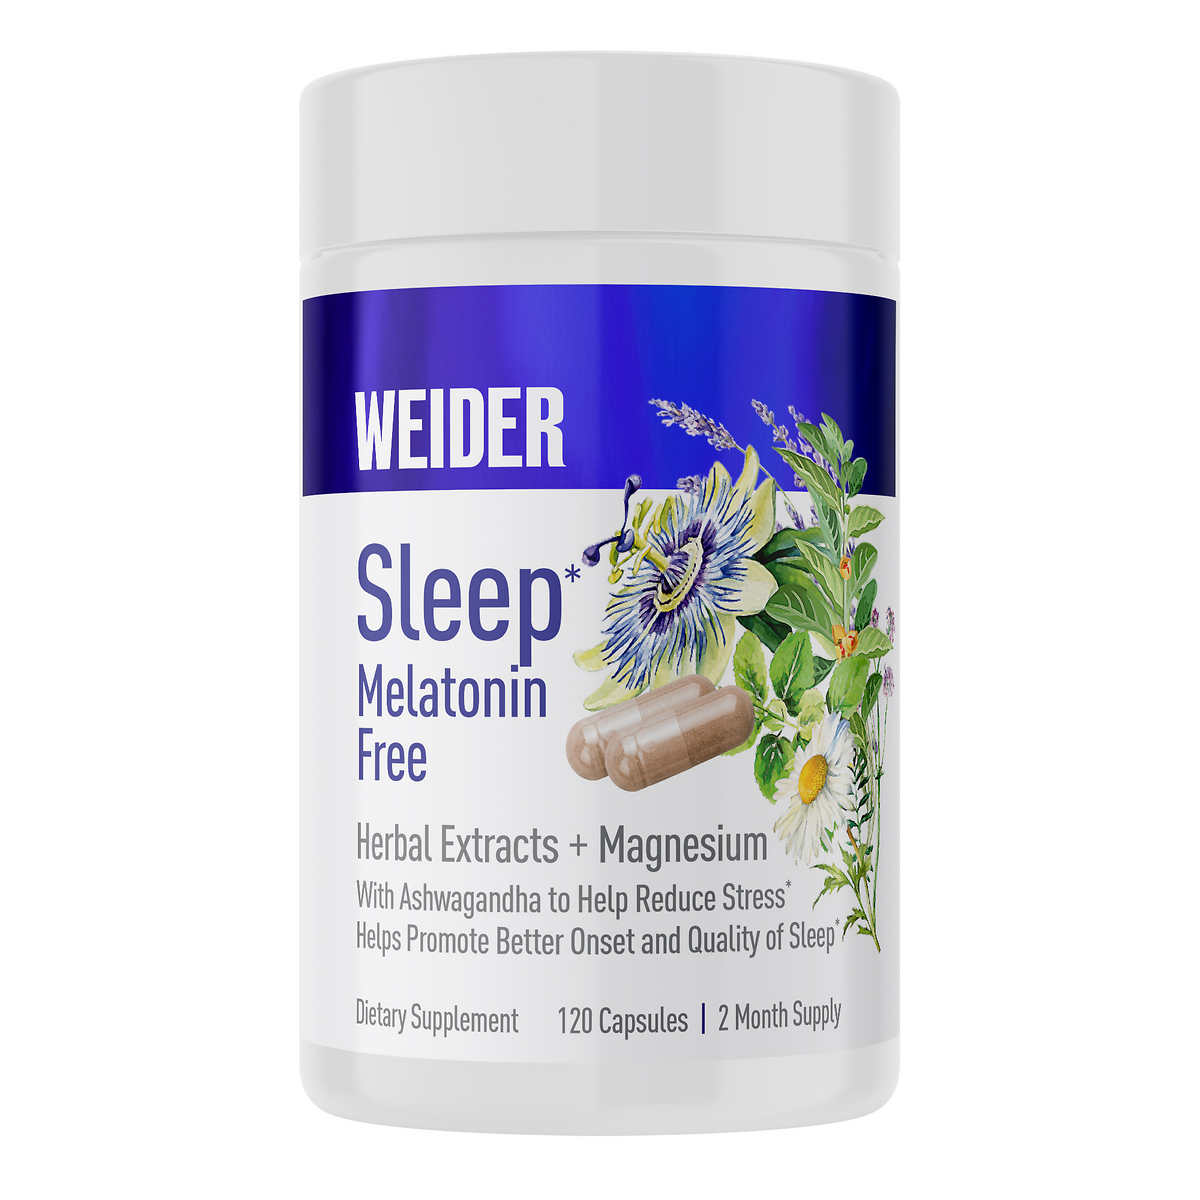 Weider Sleep Melatonin Free Sleep Aid